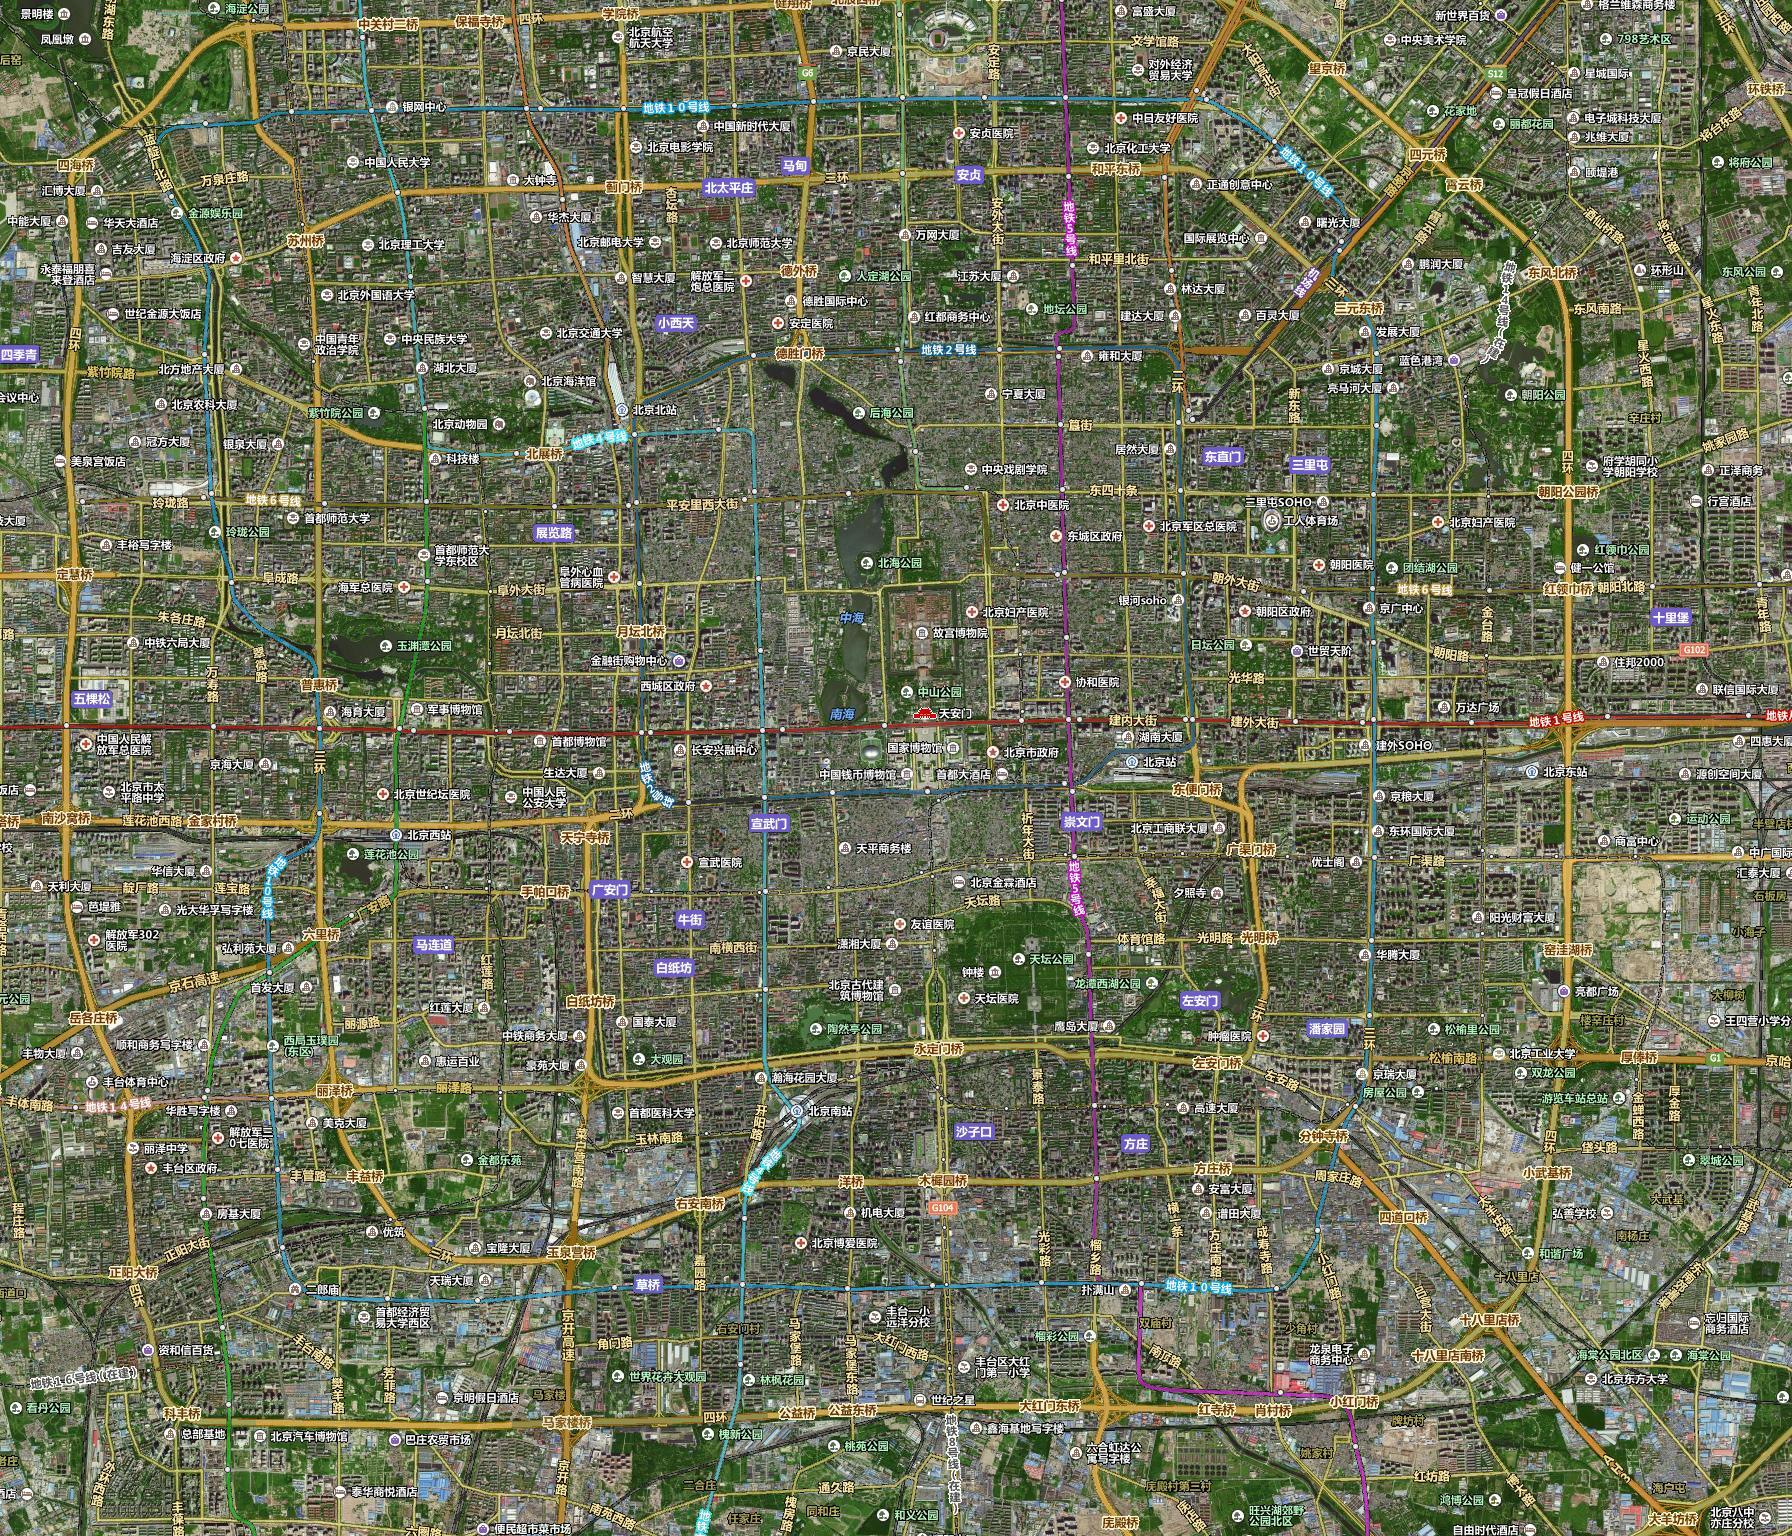 ...百度无锡全景地图 世界地图1 世界卫星影像图 全景地表